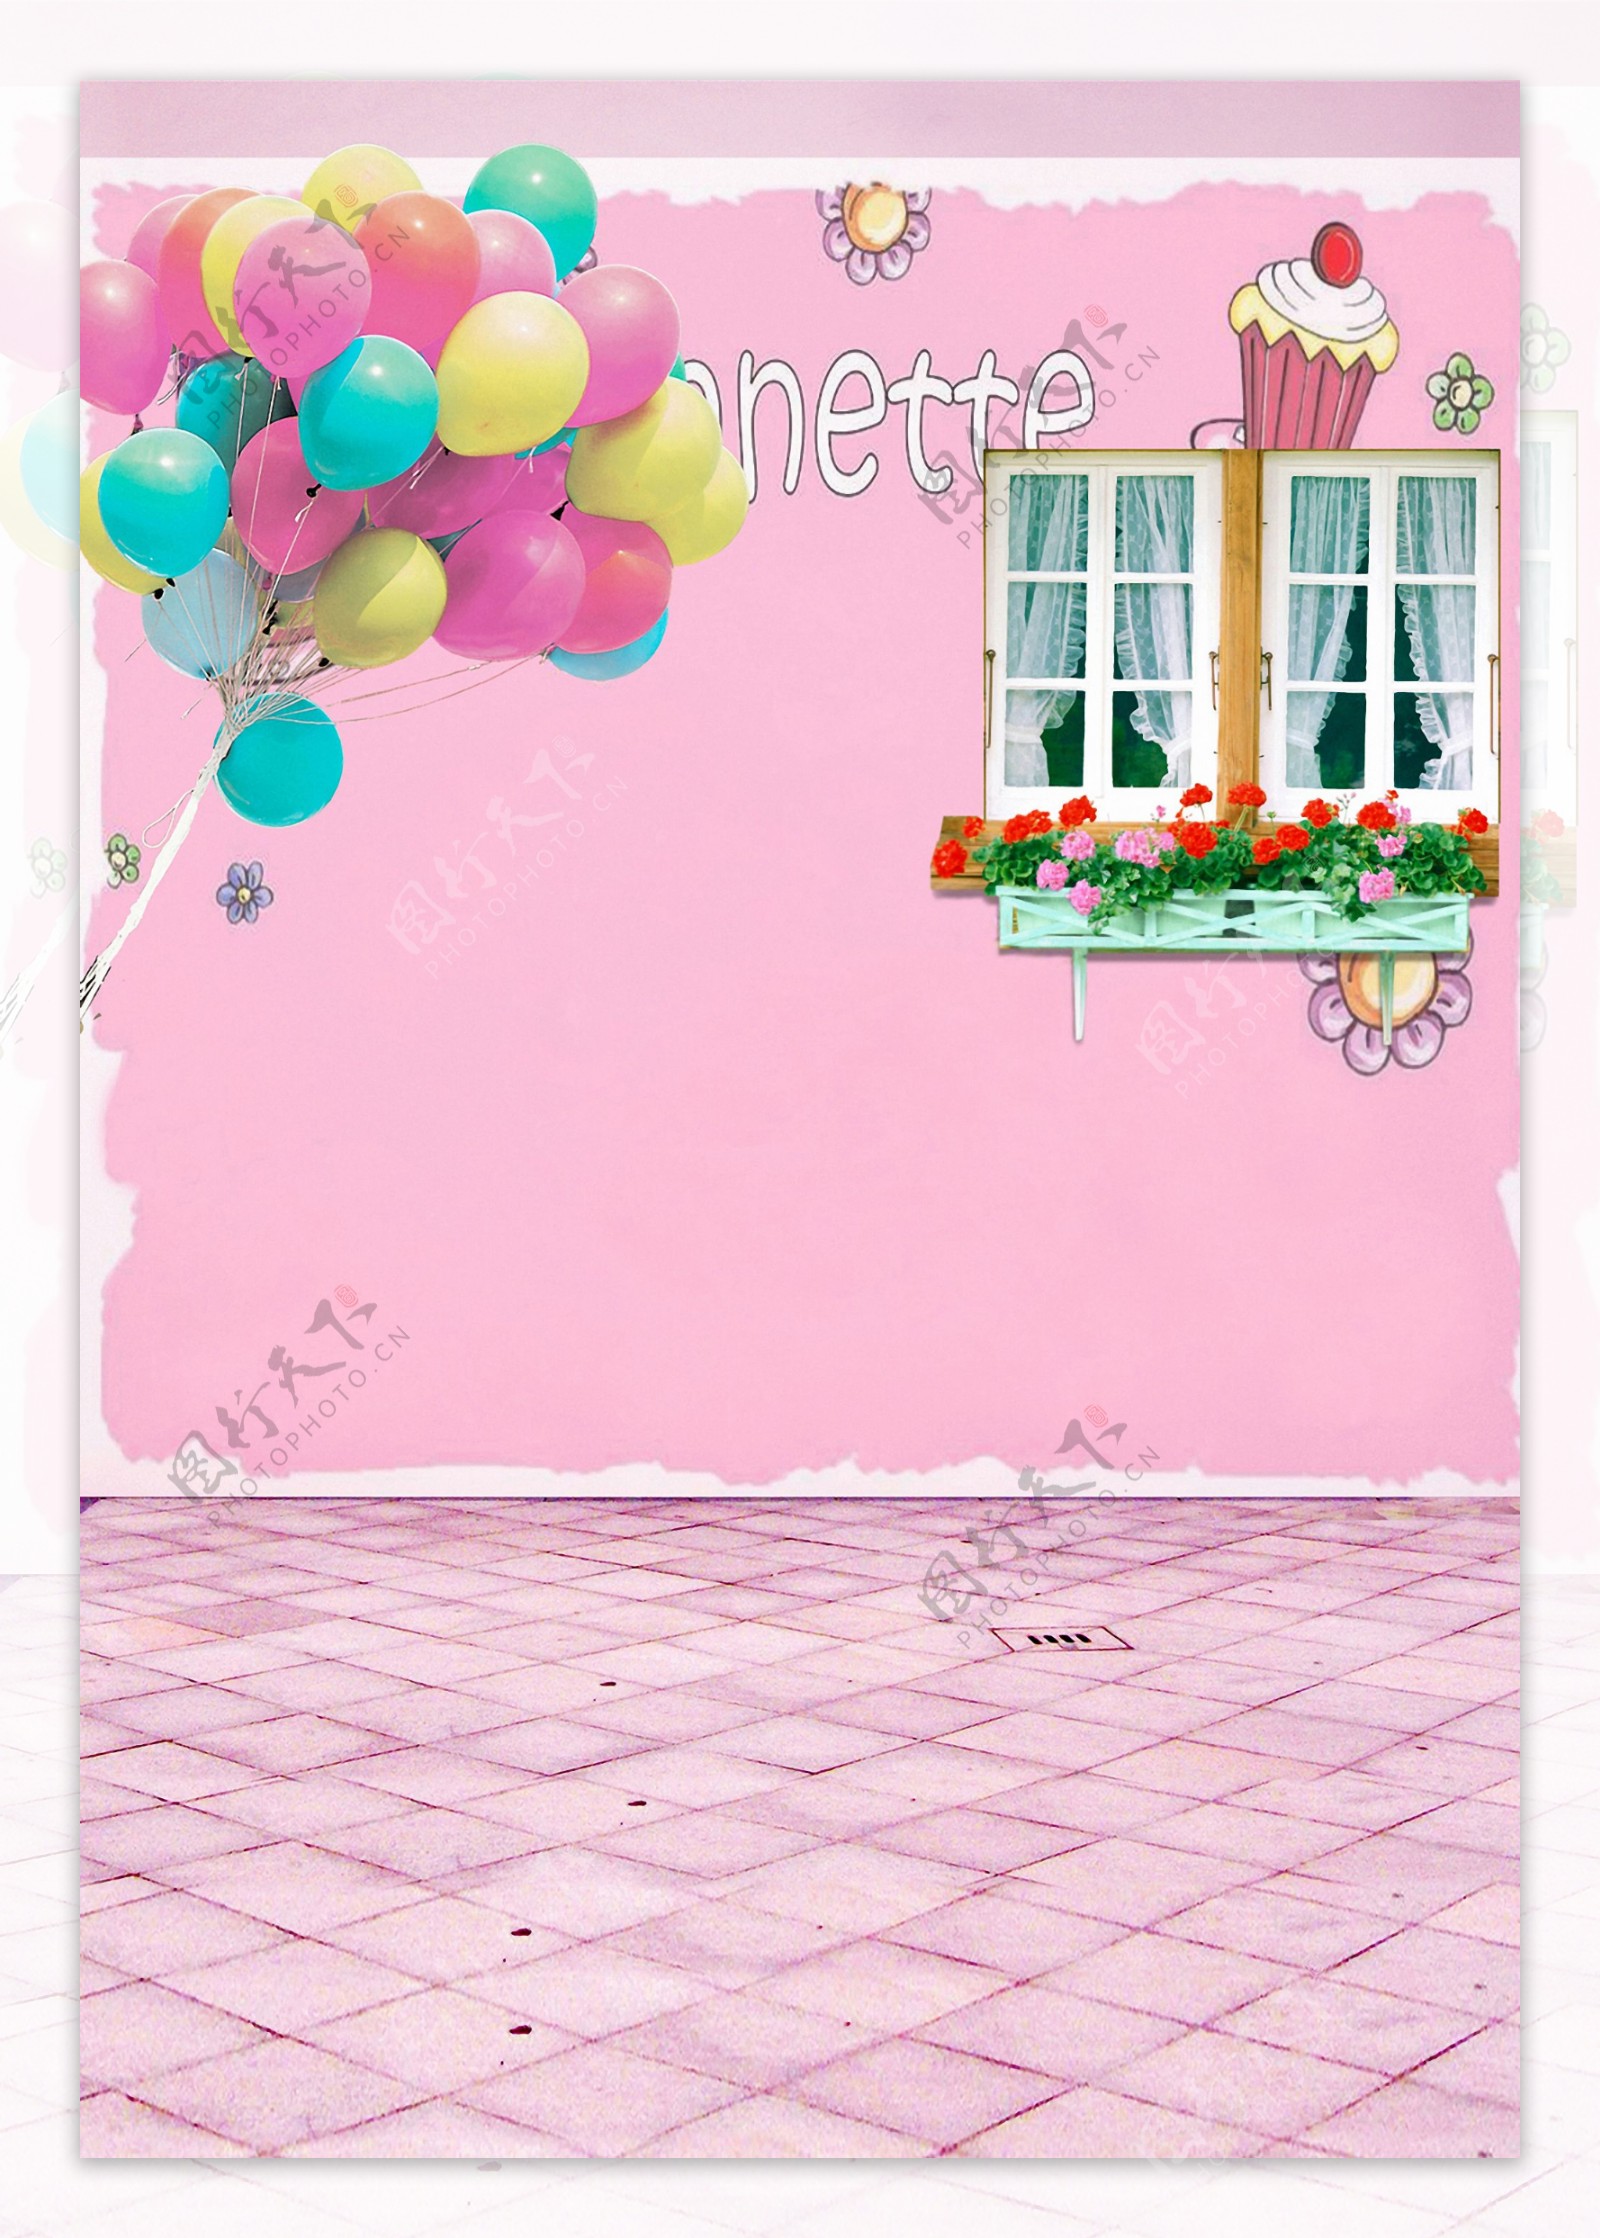 粉色墙壁